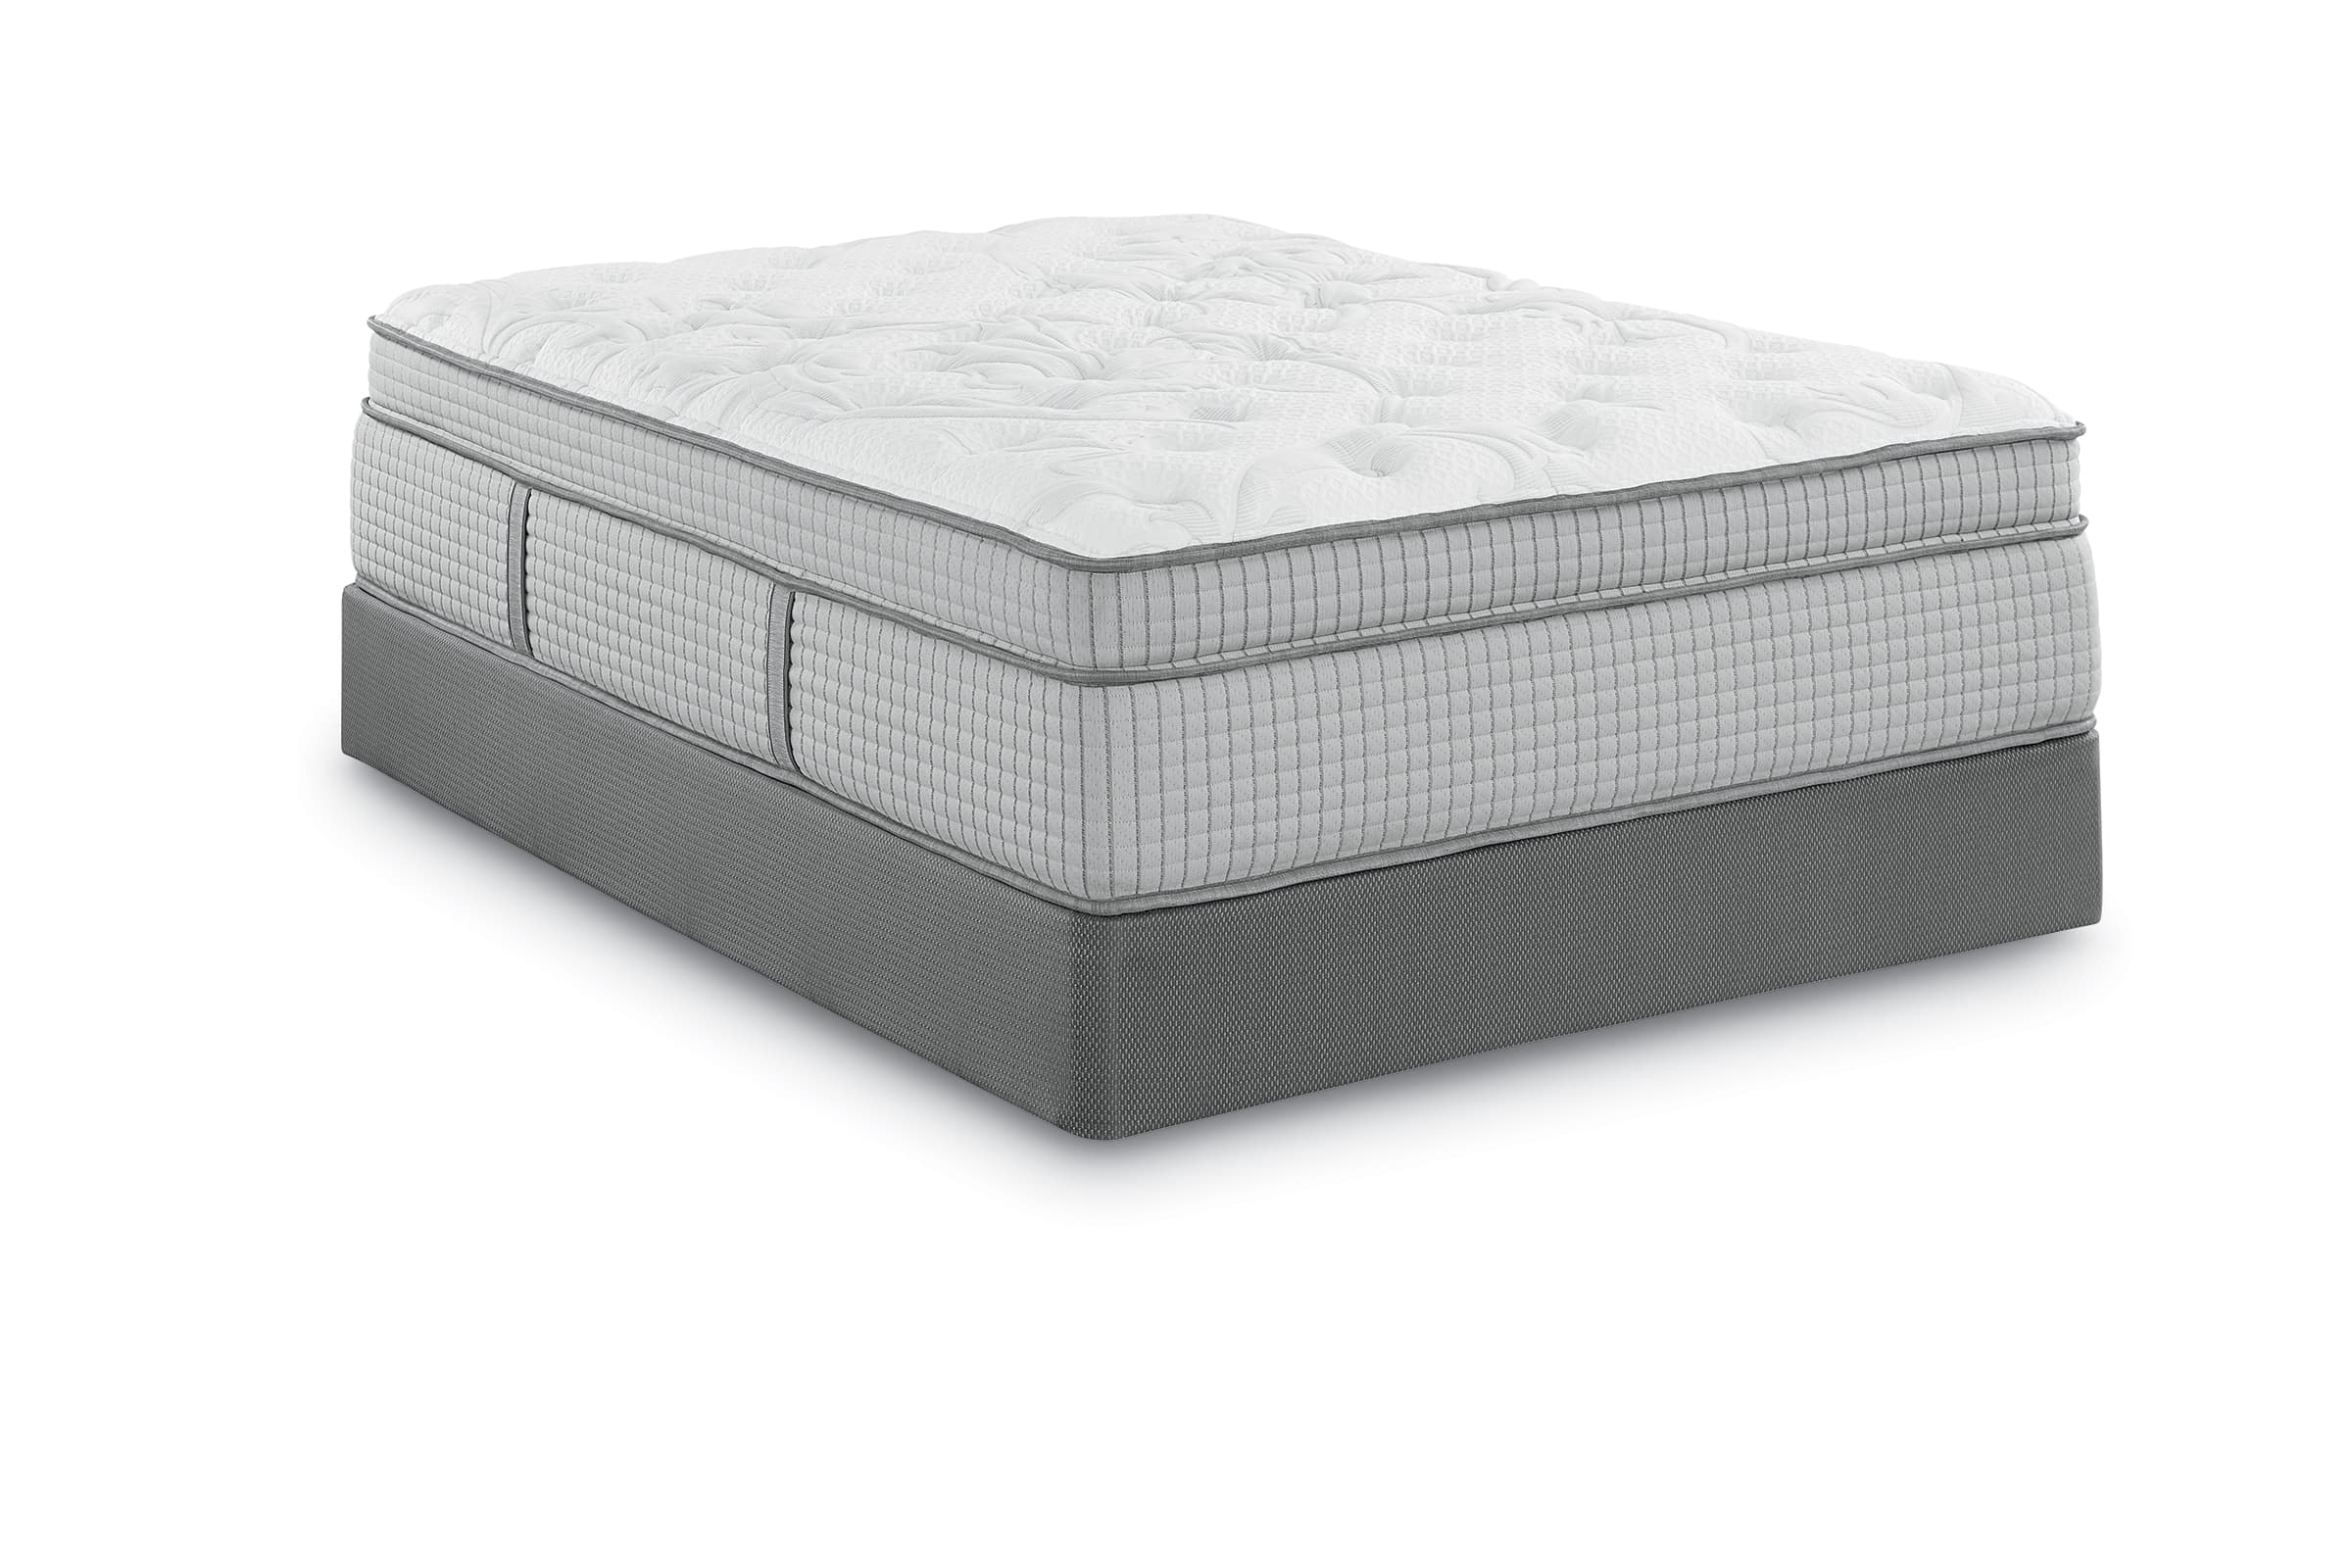 Thick plush mattress gray